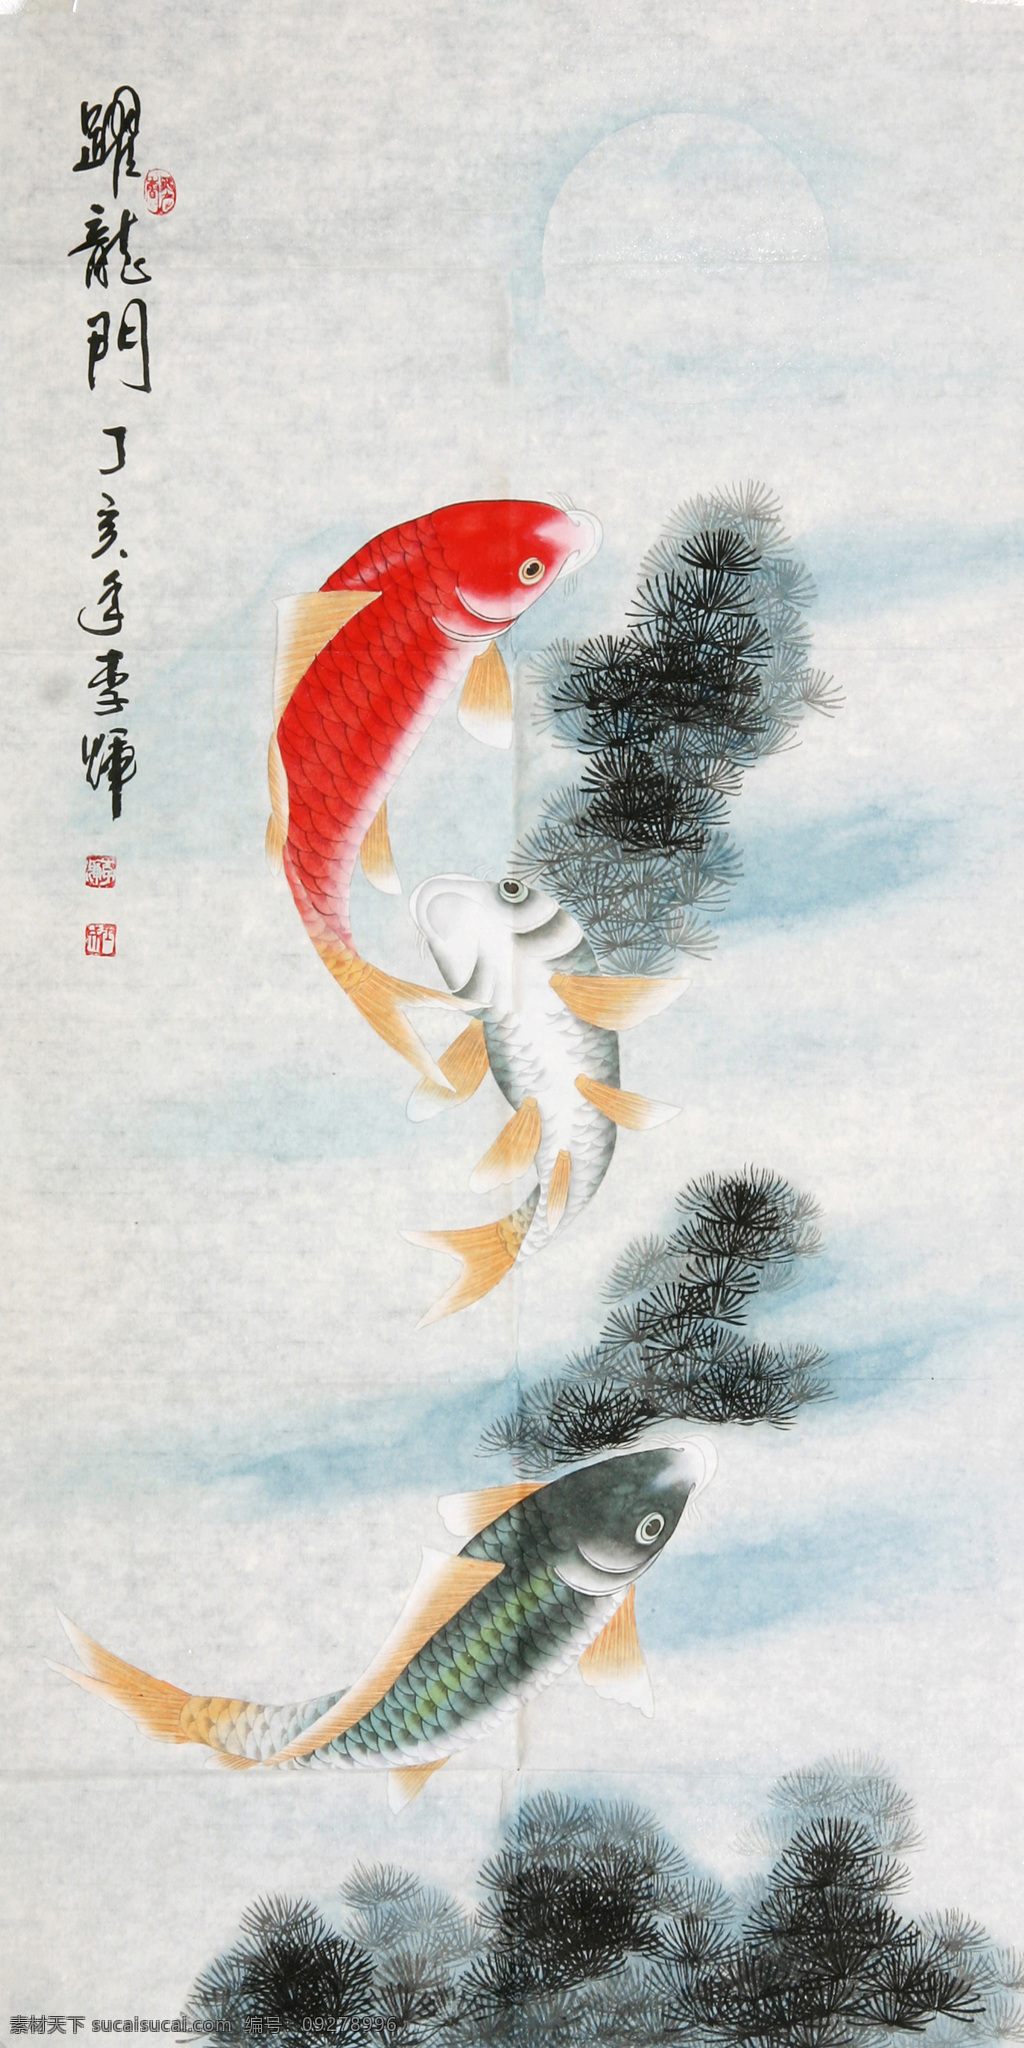 鱼戏 工笔 白描 图案 绘画 古典 传统纹样 神话传说 荷花 翠鸟 中国风 绘画书法 文化艺术